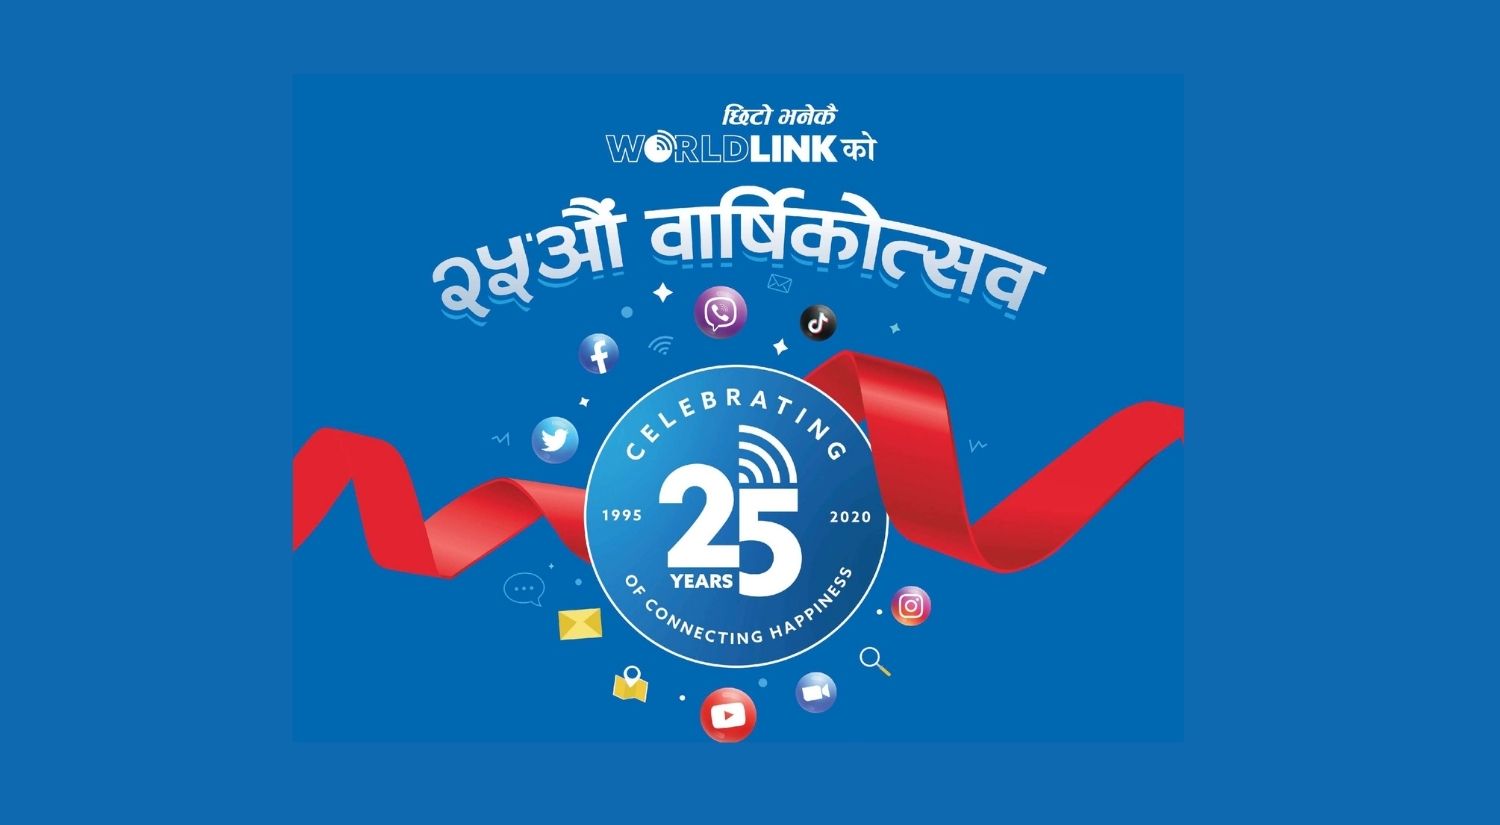 Worldlink 25 years internet service achievements